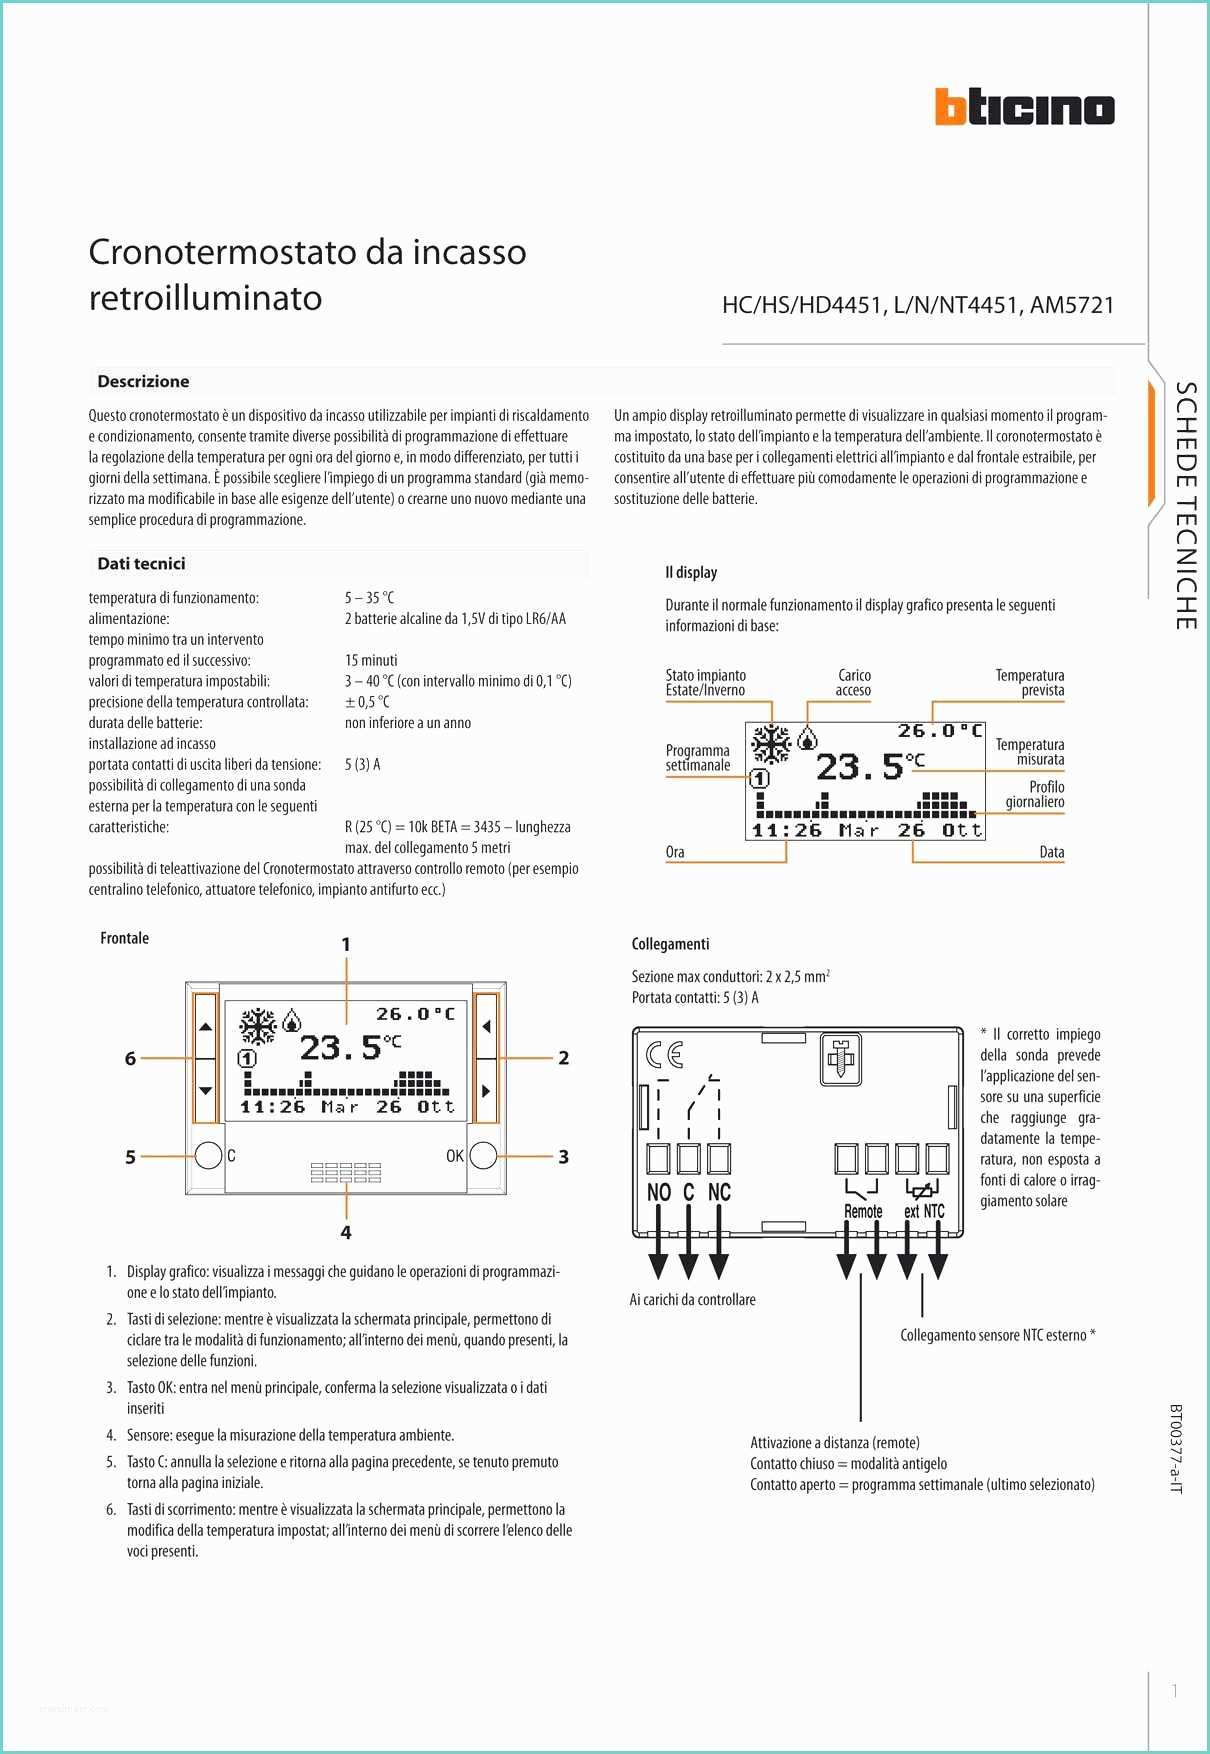 Cronotermostato Perry Cr011a istruzioni Recensione Termostato Smarther Bticino X8000 Bello E